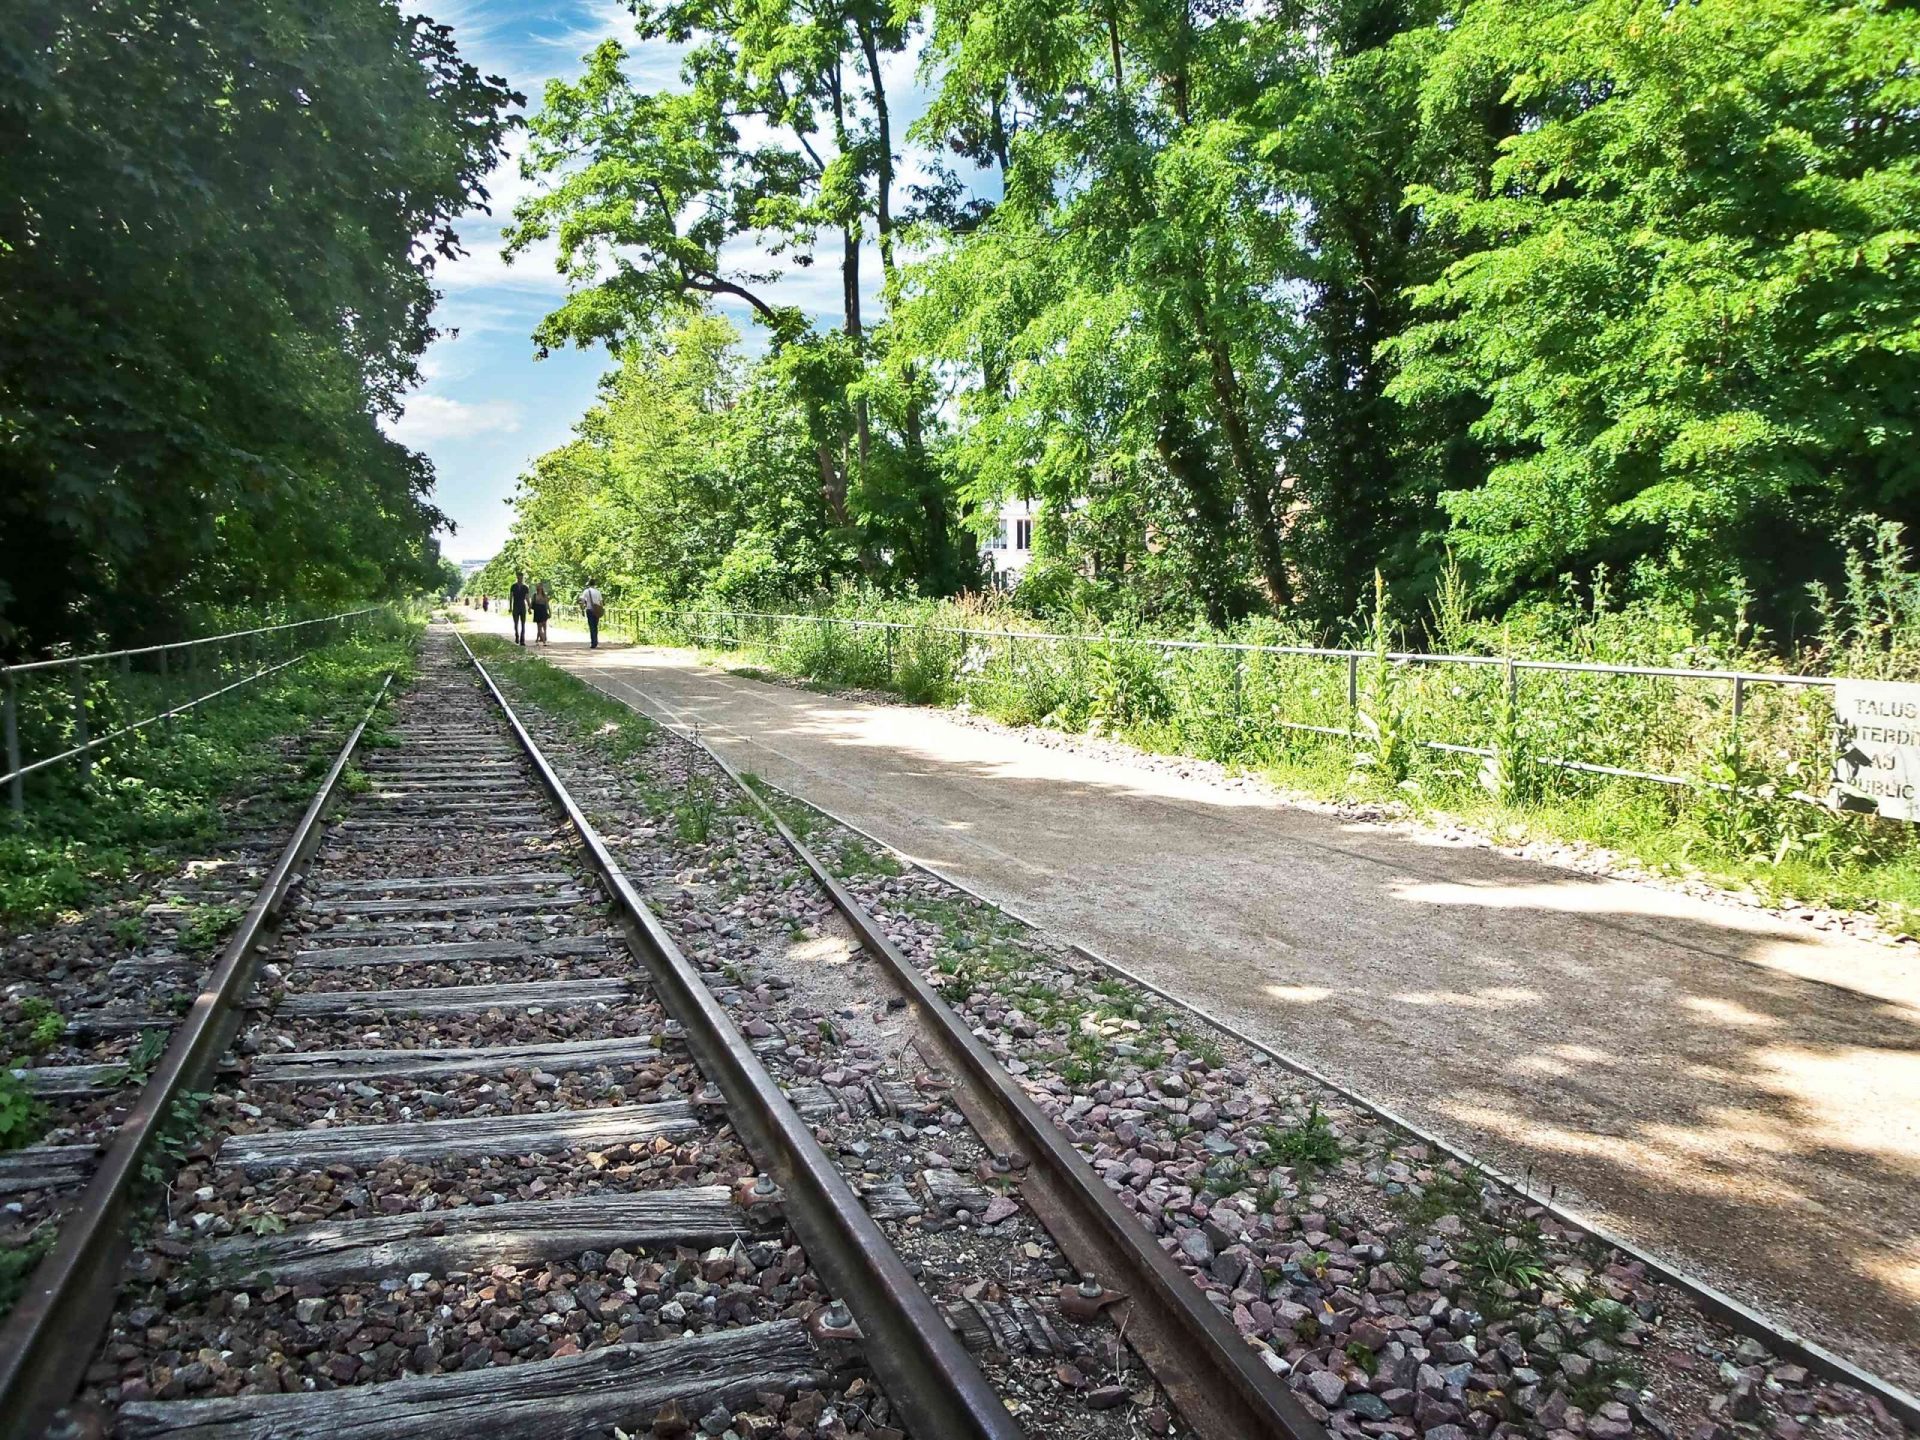 Una parte abandonada de la vía del tren junto a un sendero para caminar y altos árboles verdes que conforman la Petite Ceinture en Pari,